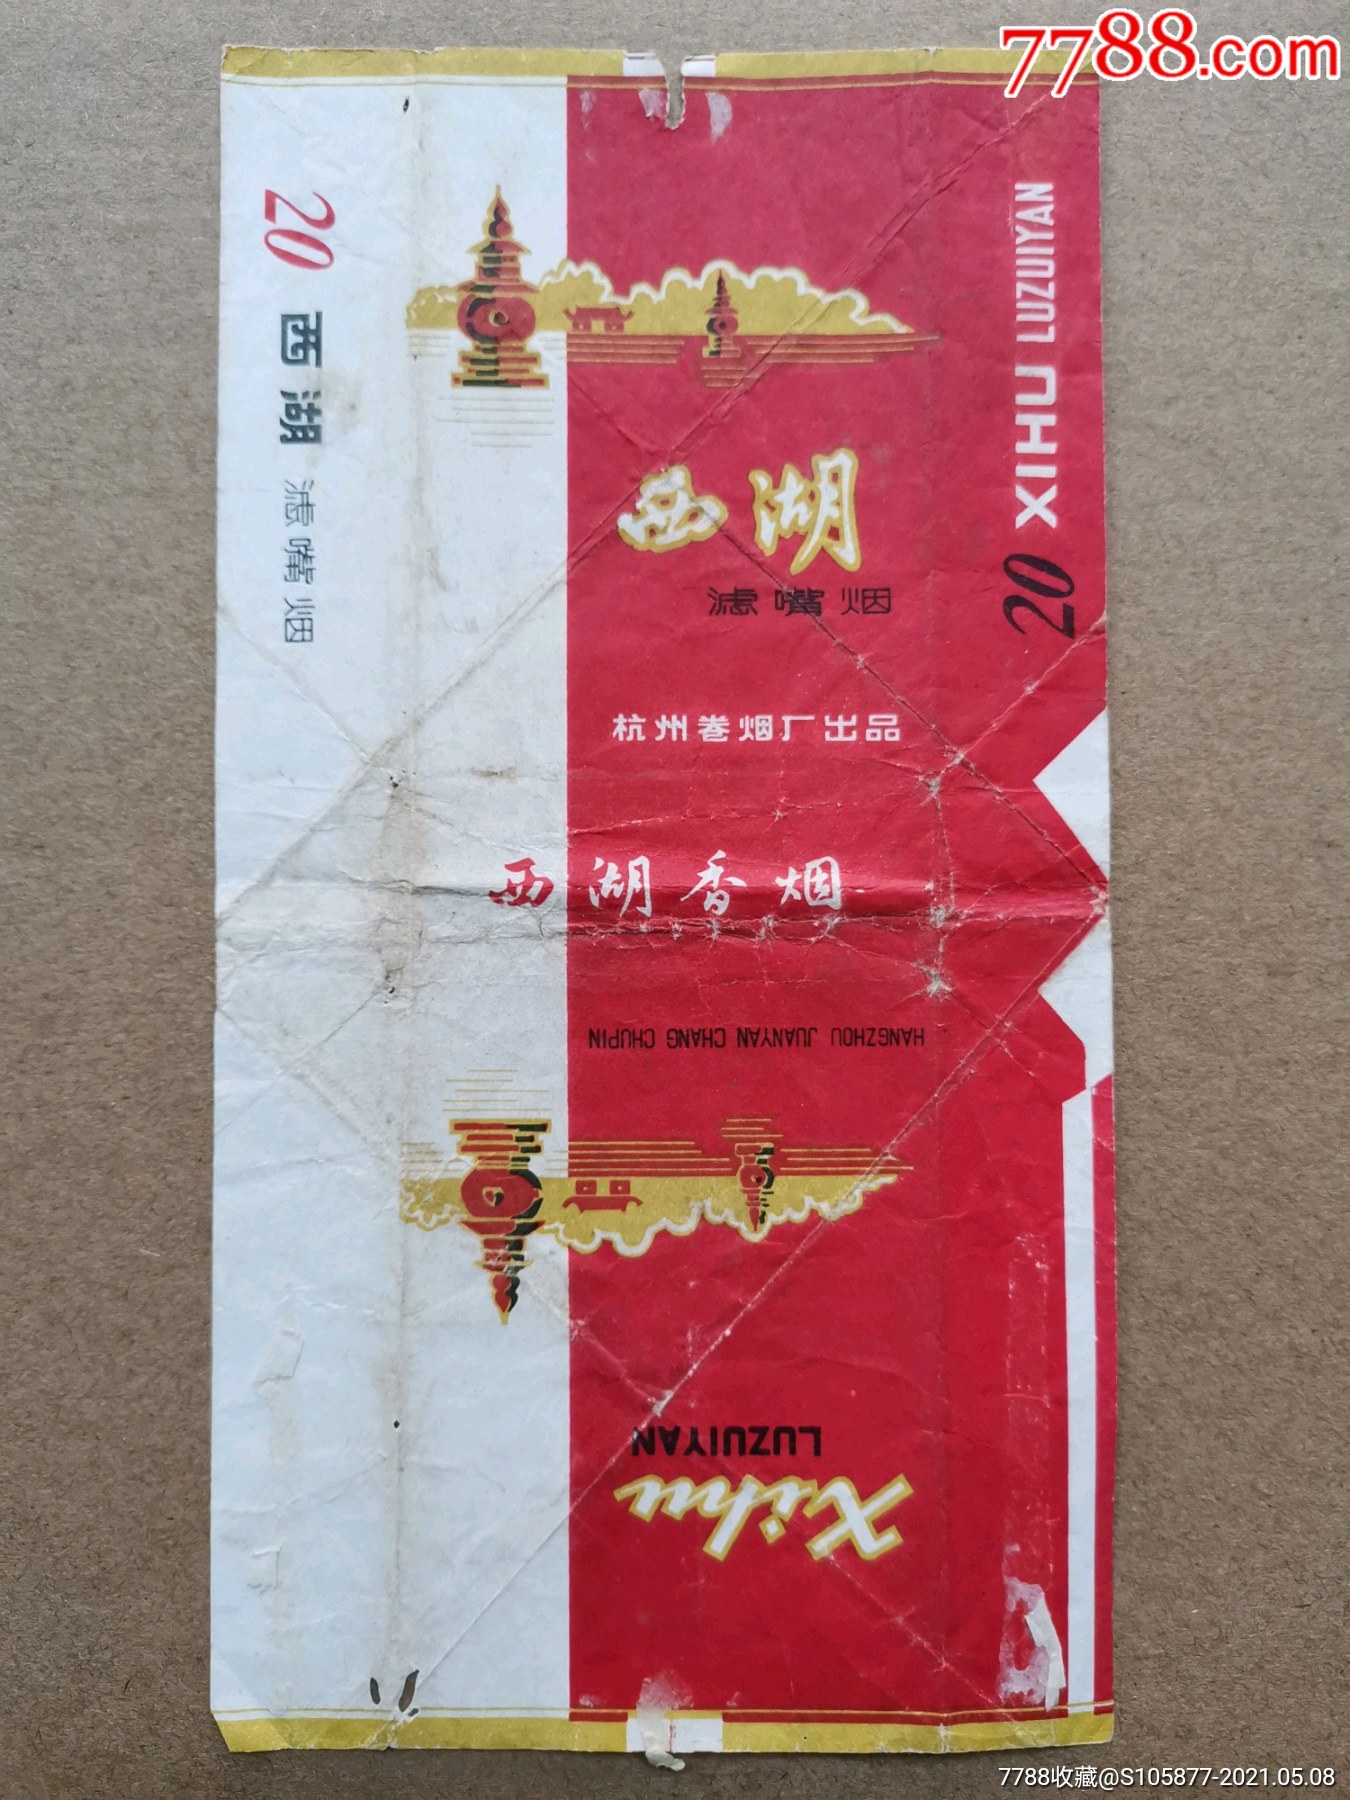 杭州卷烟厂出品的西湖香烟烟标一张